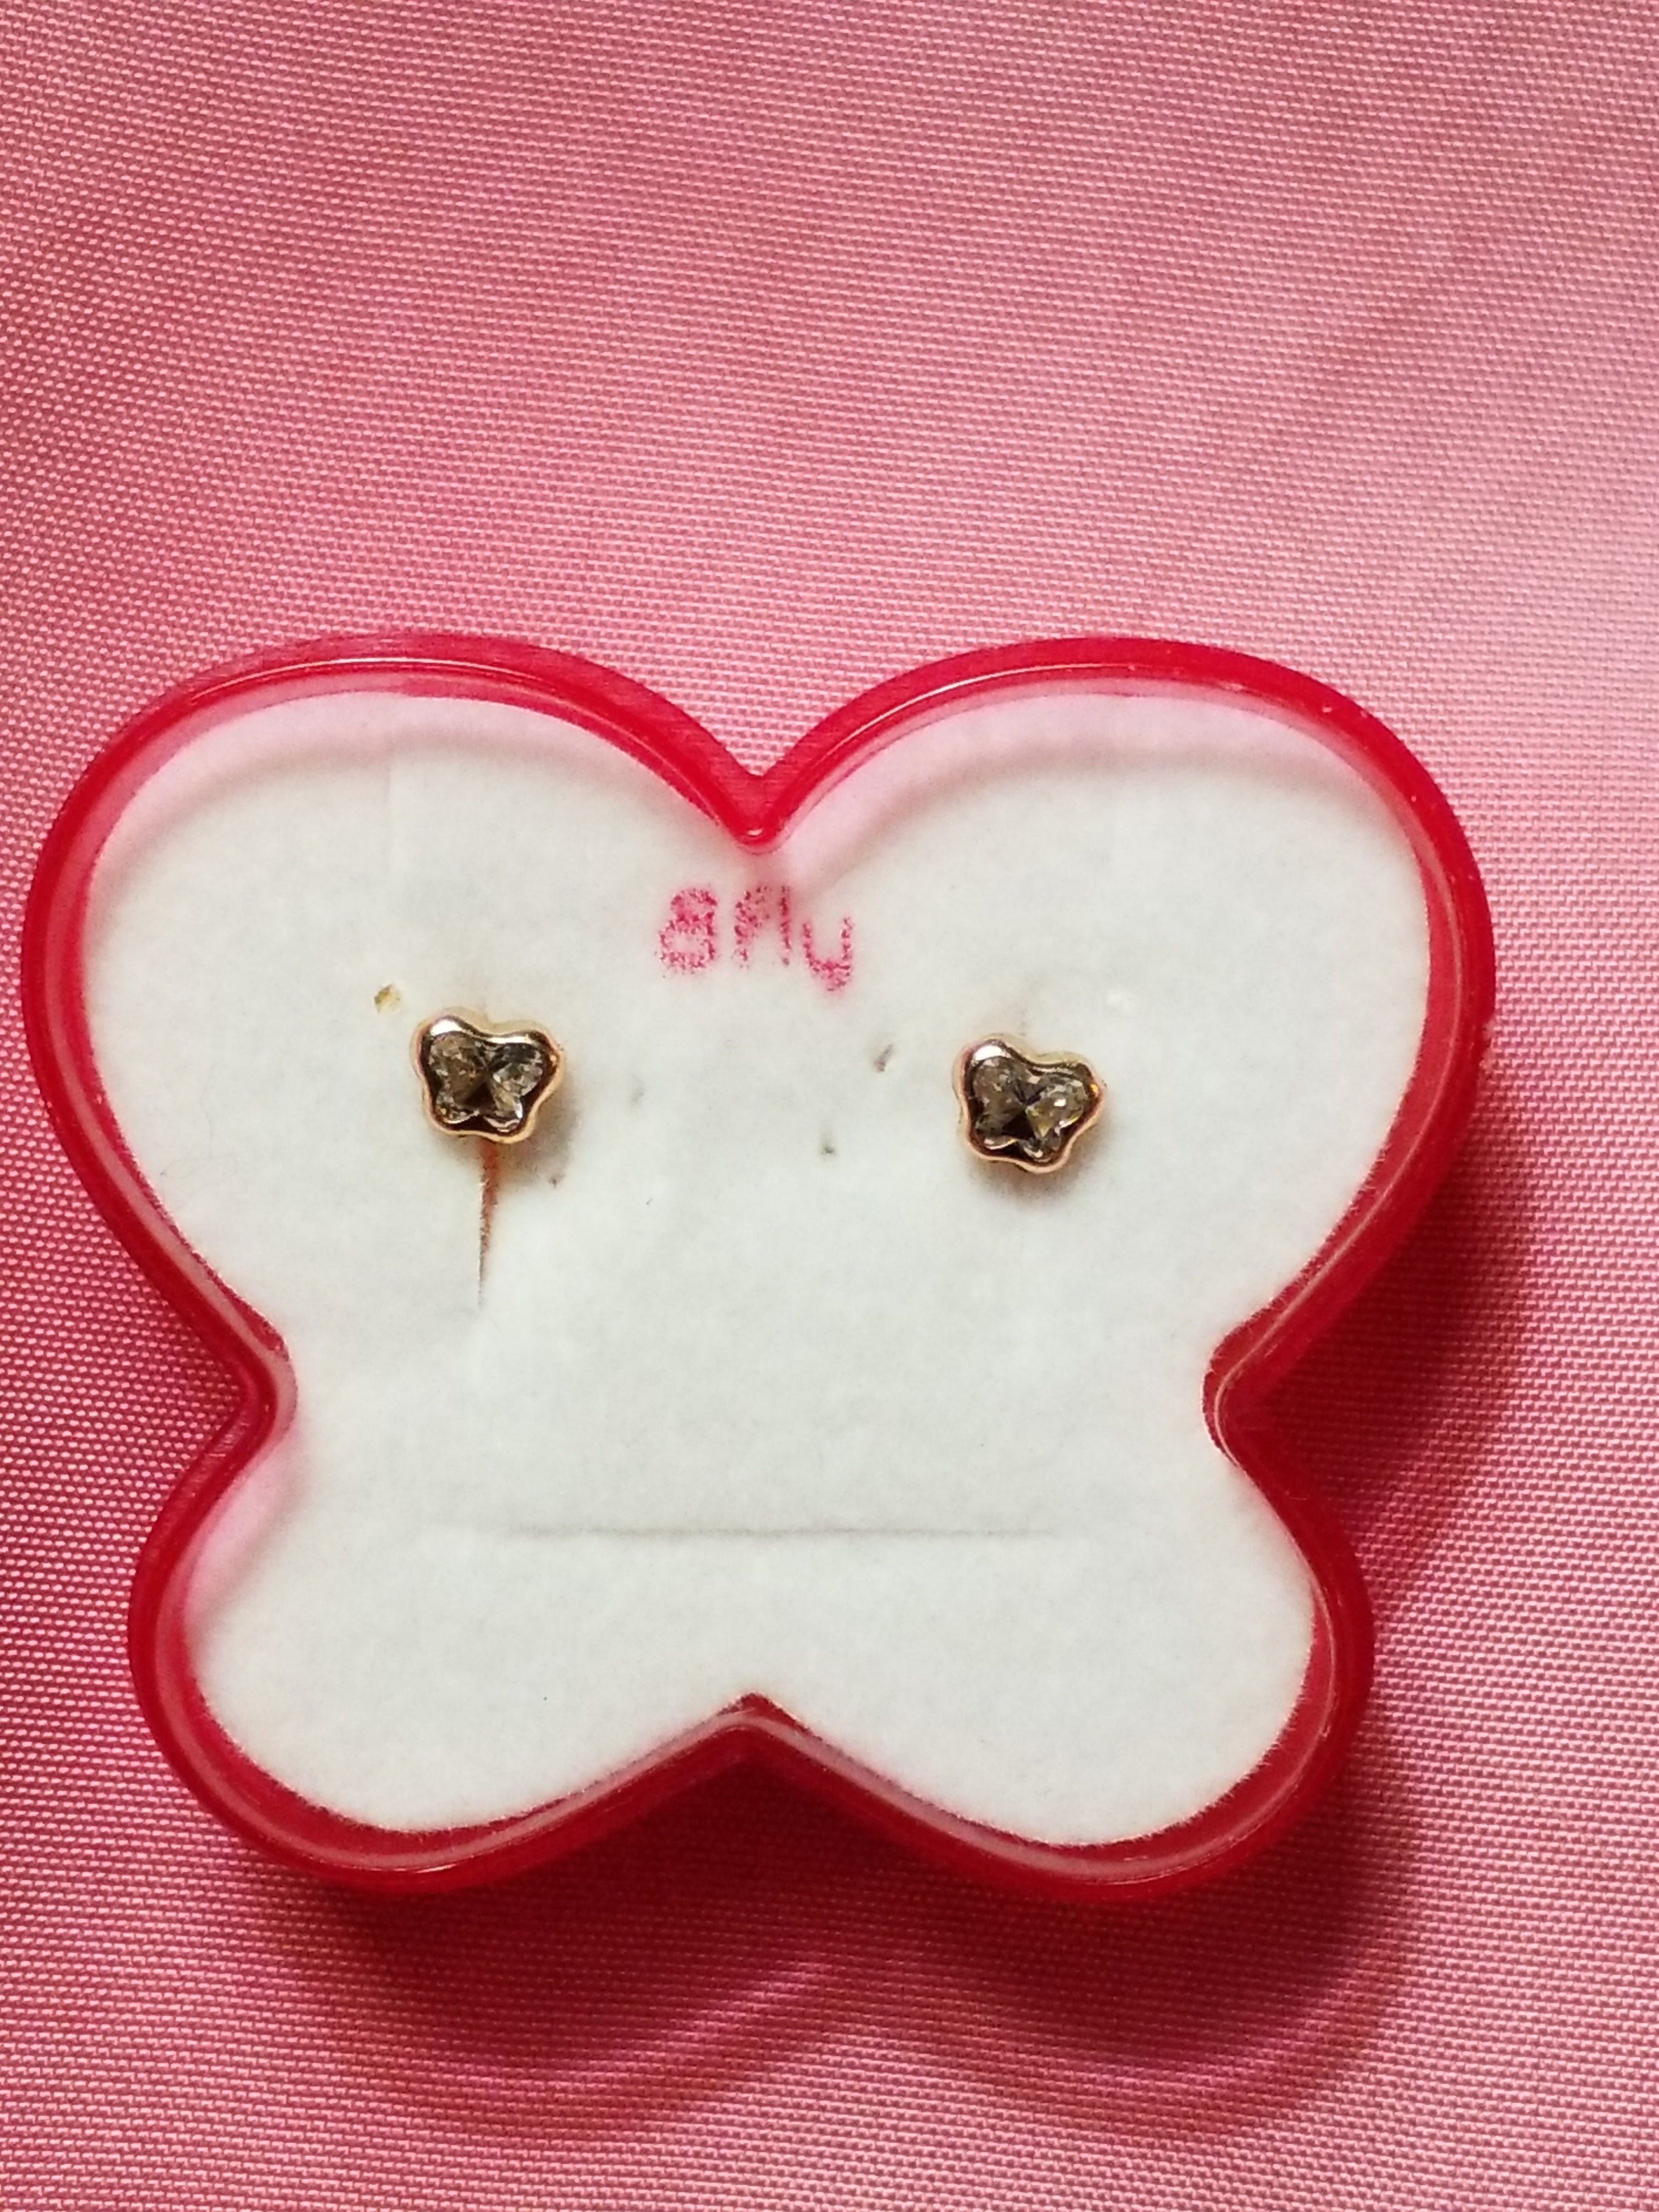 Children's 14Kt  Earrings - Screwbacks - Butterfly Design